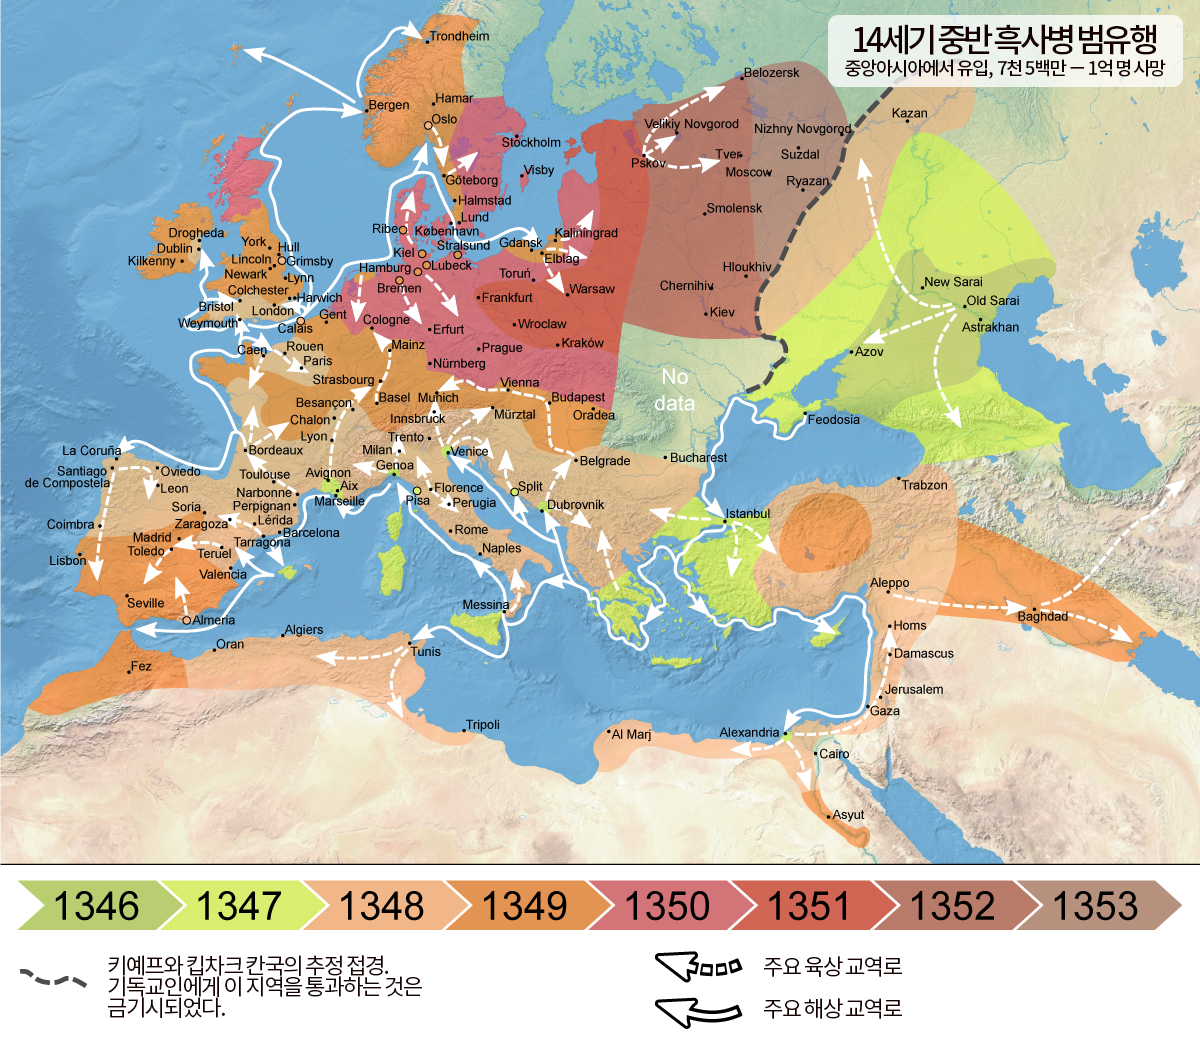 파일:1346-1353_spread_of_the_Black_Death_in_Europe_kor_map.png